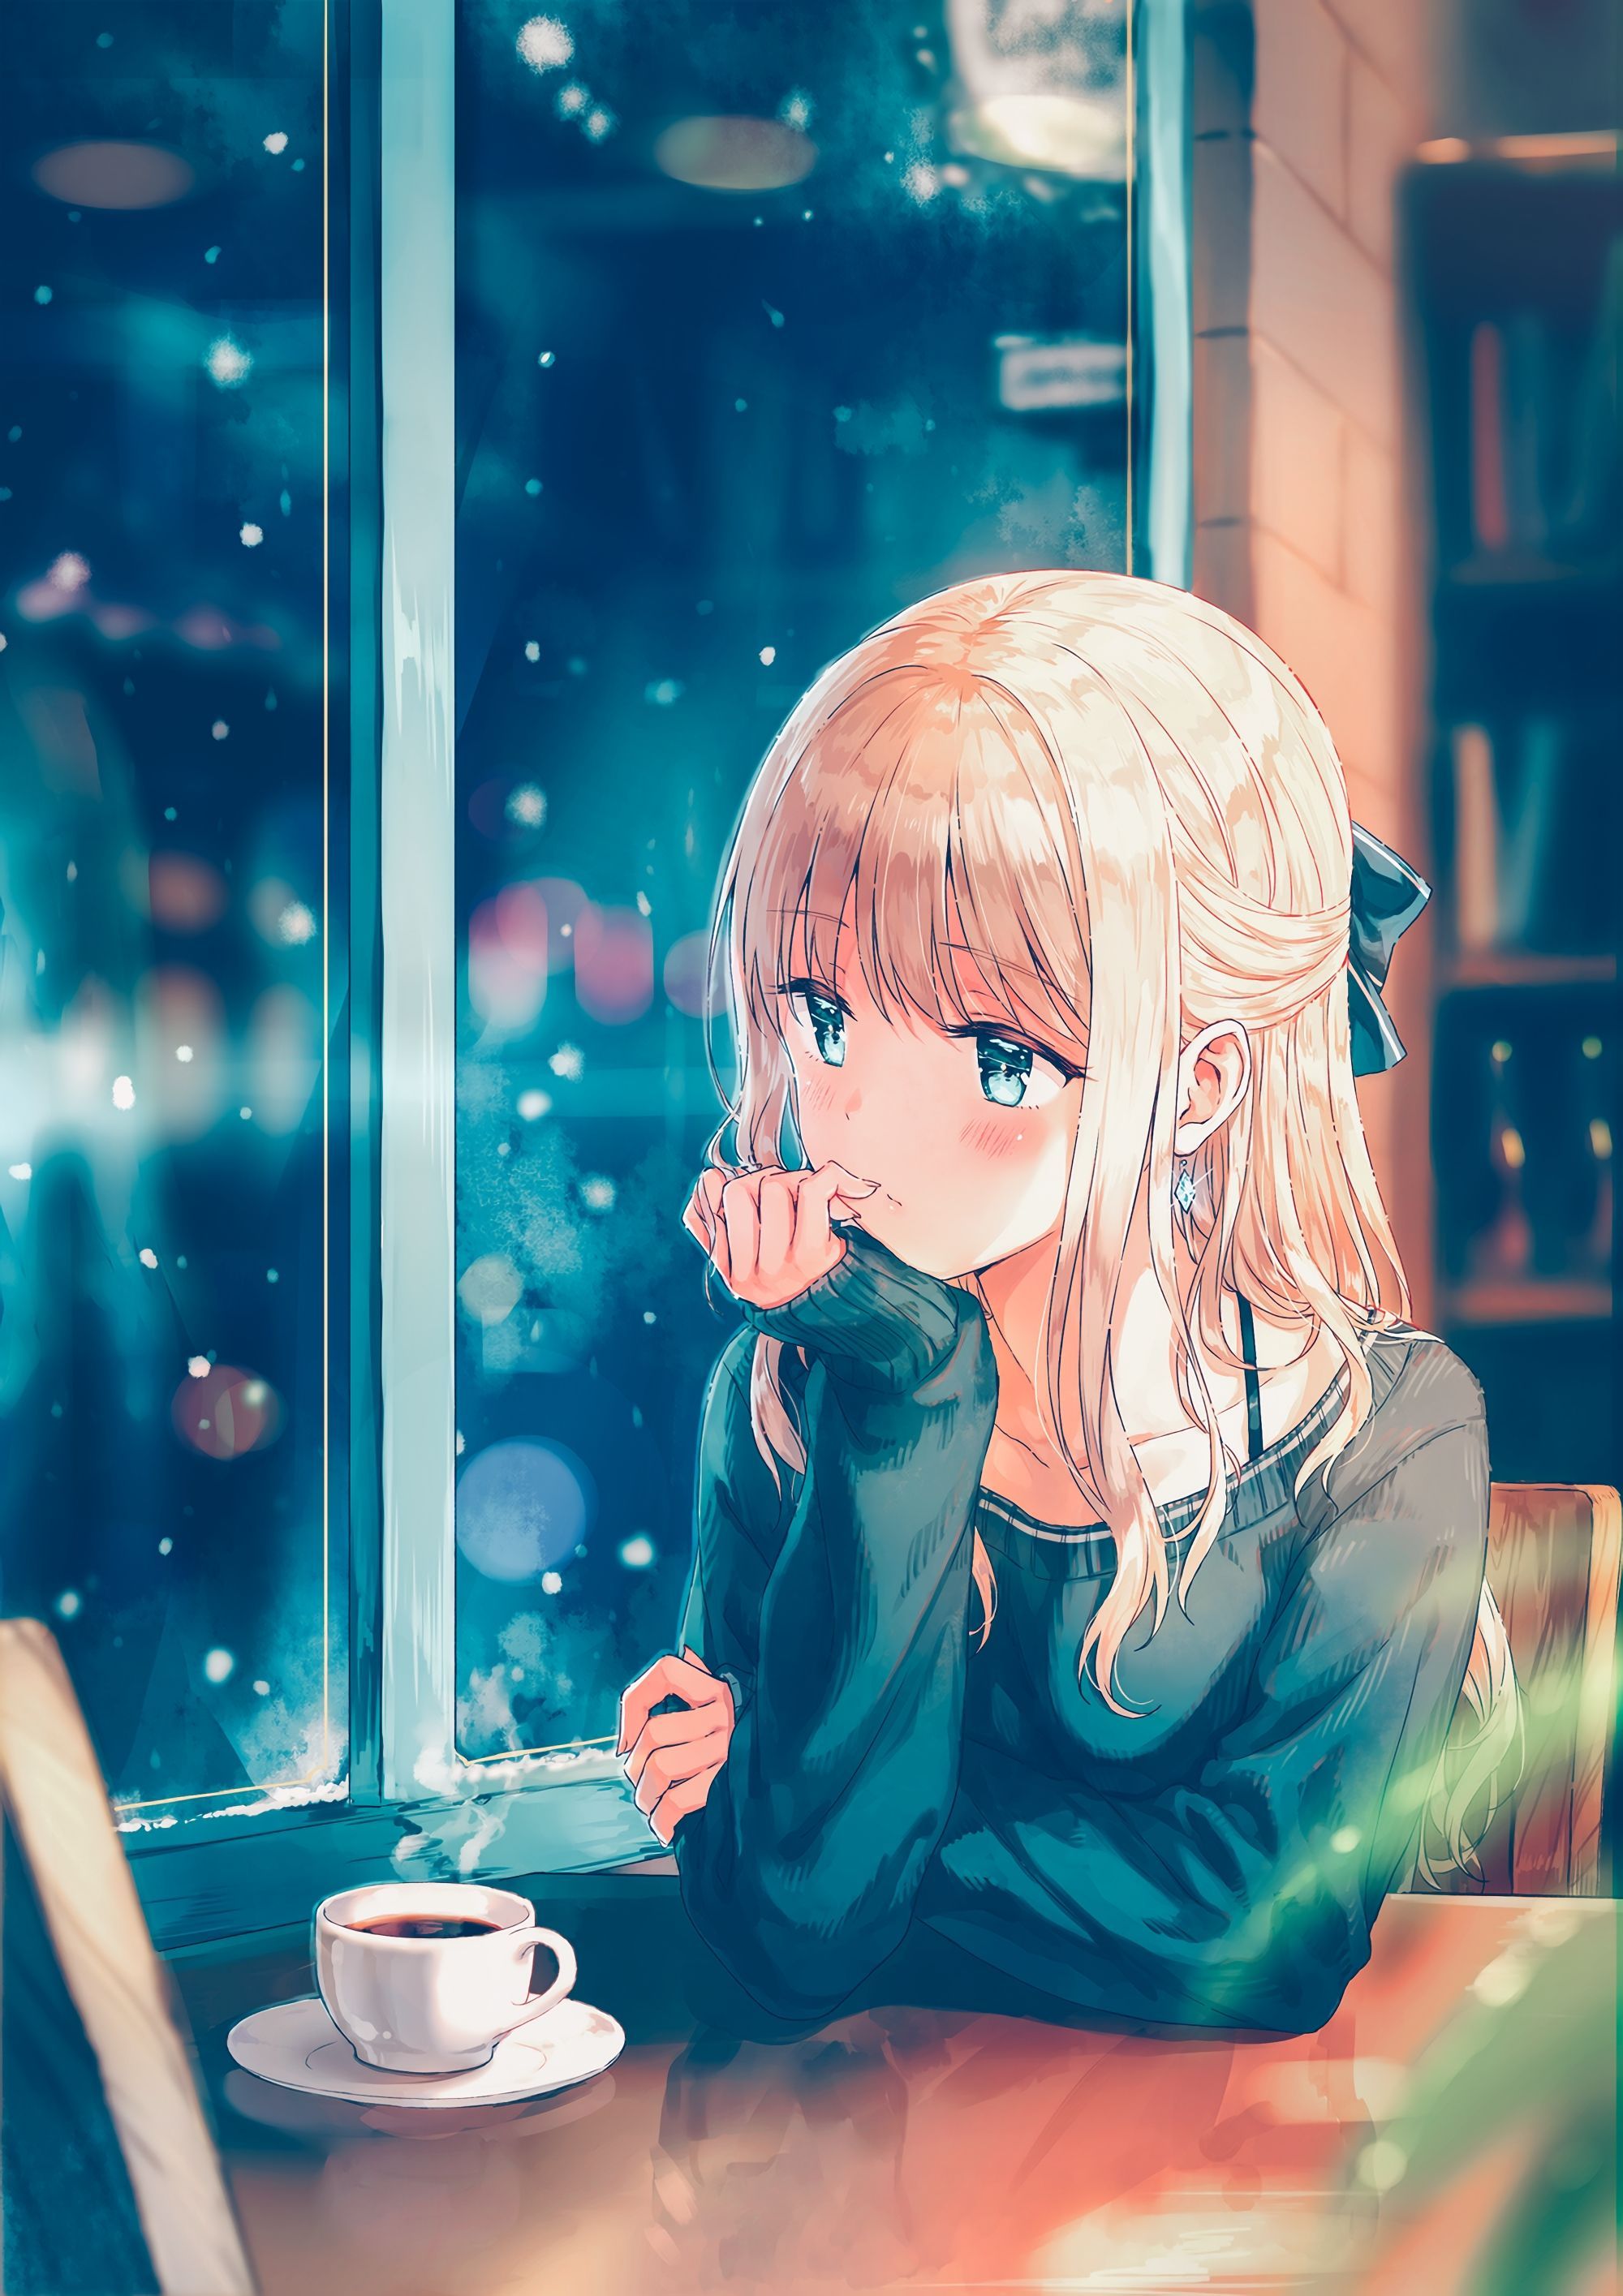 Cute Anime Girl Wallpaper On